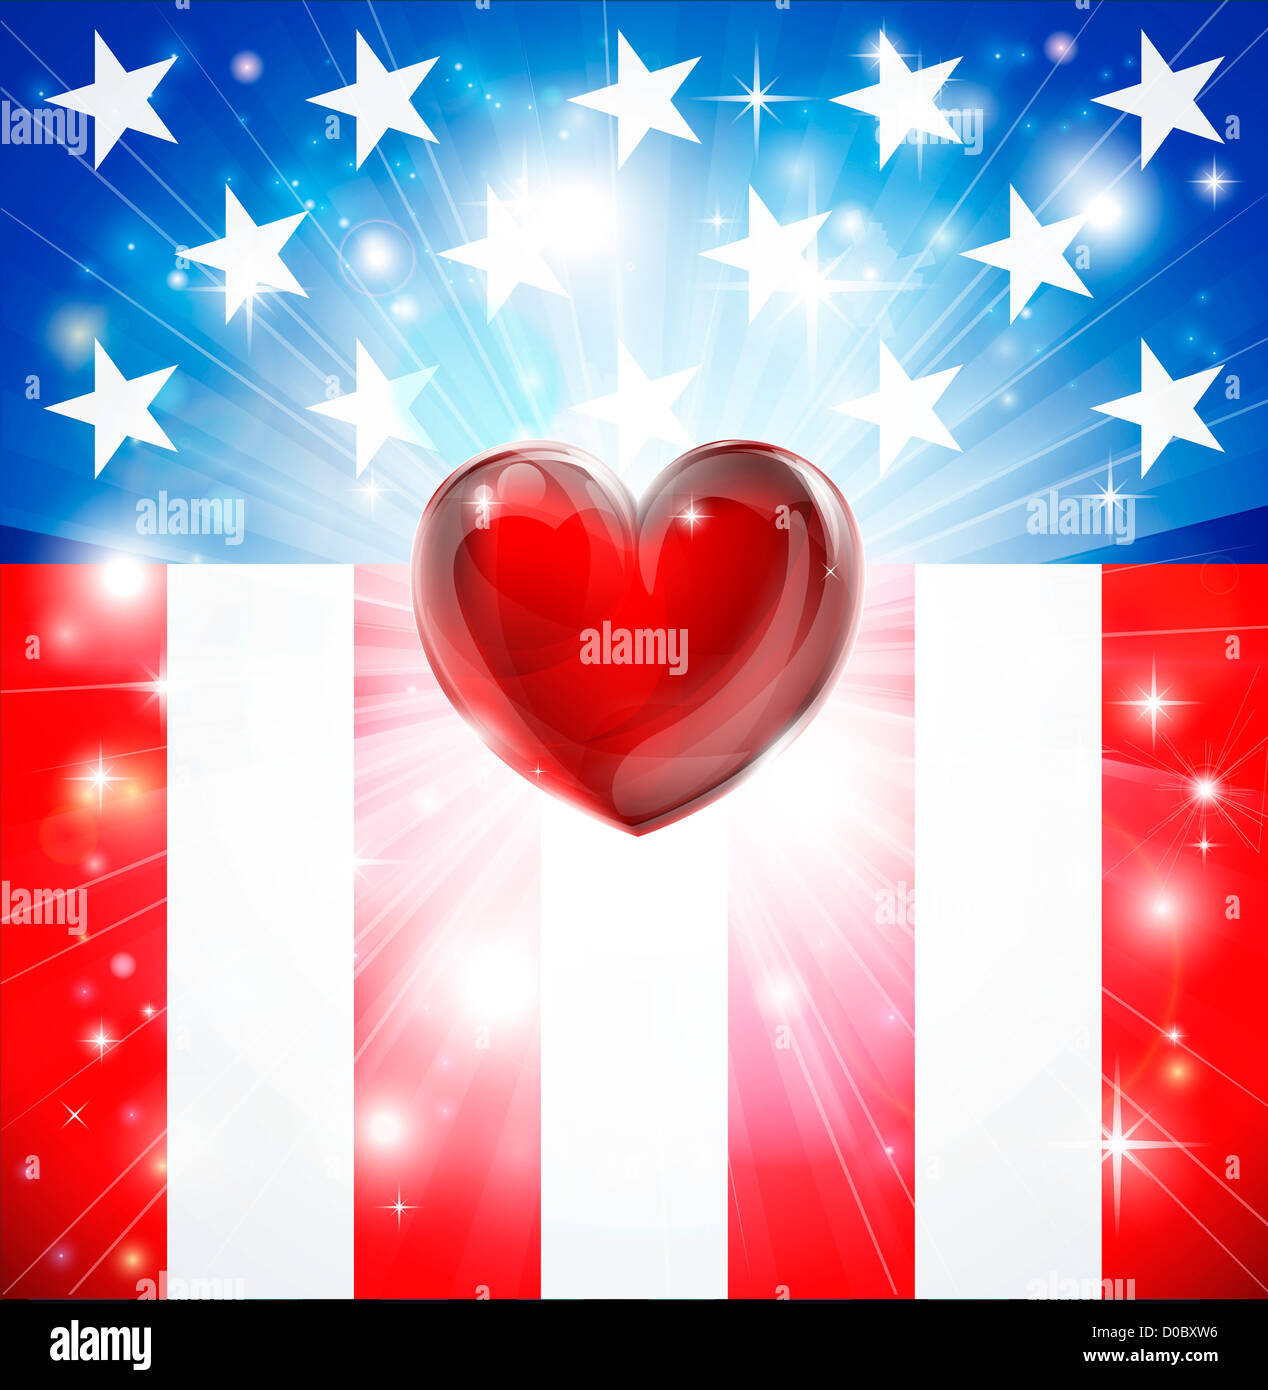 Bandiera americana sfondo patriottico con il cuore, la nozione di amore del paese. Ottimo per il 4 di luglio o temi militari. Foto Stock